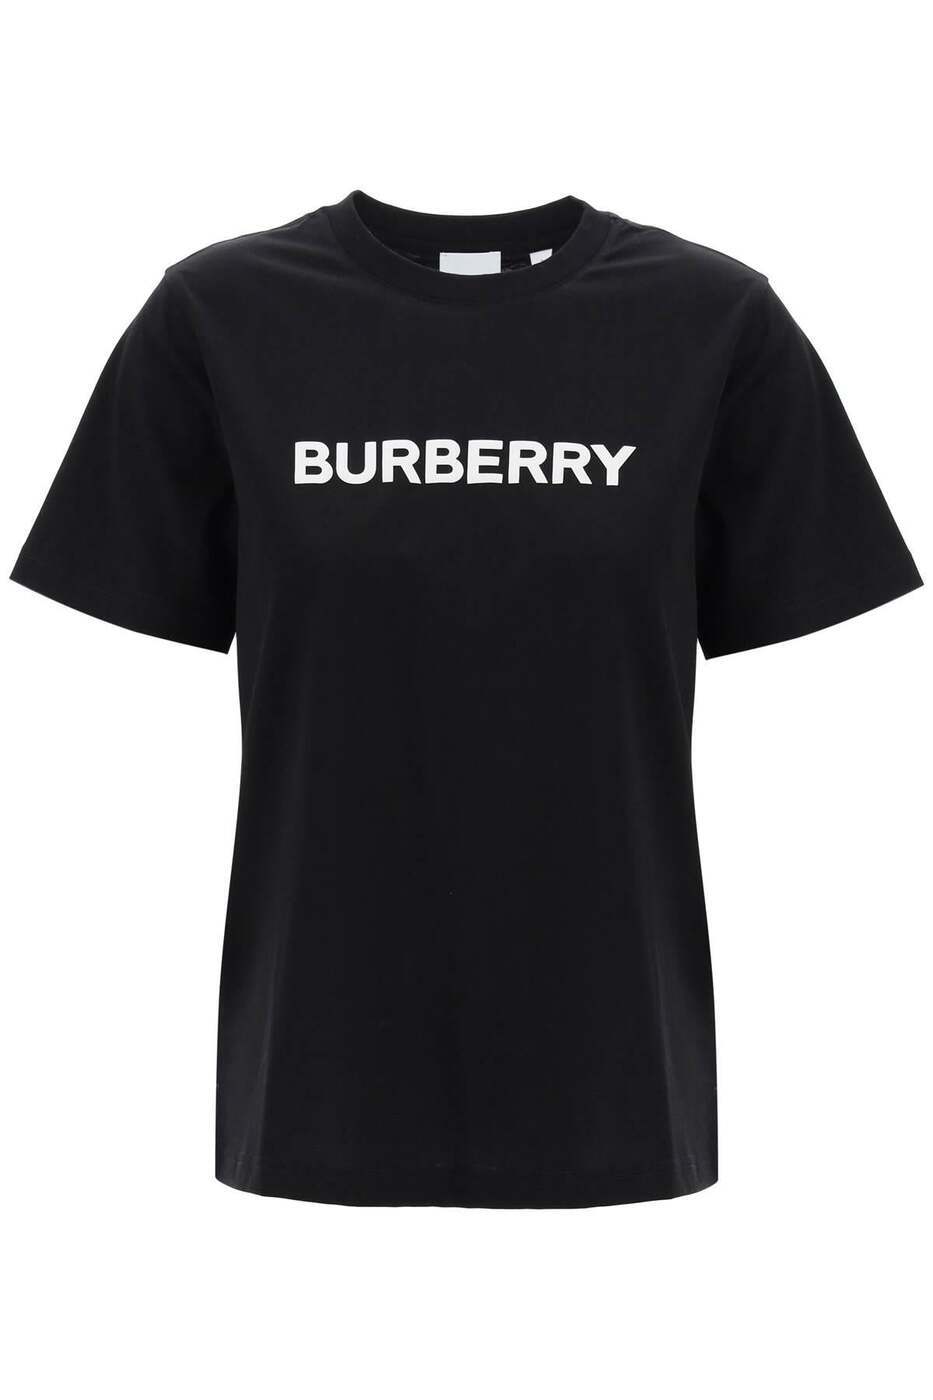 BURBERRY バーバリー ブラック Black Tシャツ レディース 8165909364885 【関税・送料無料】【ラッピング無料】 ba